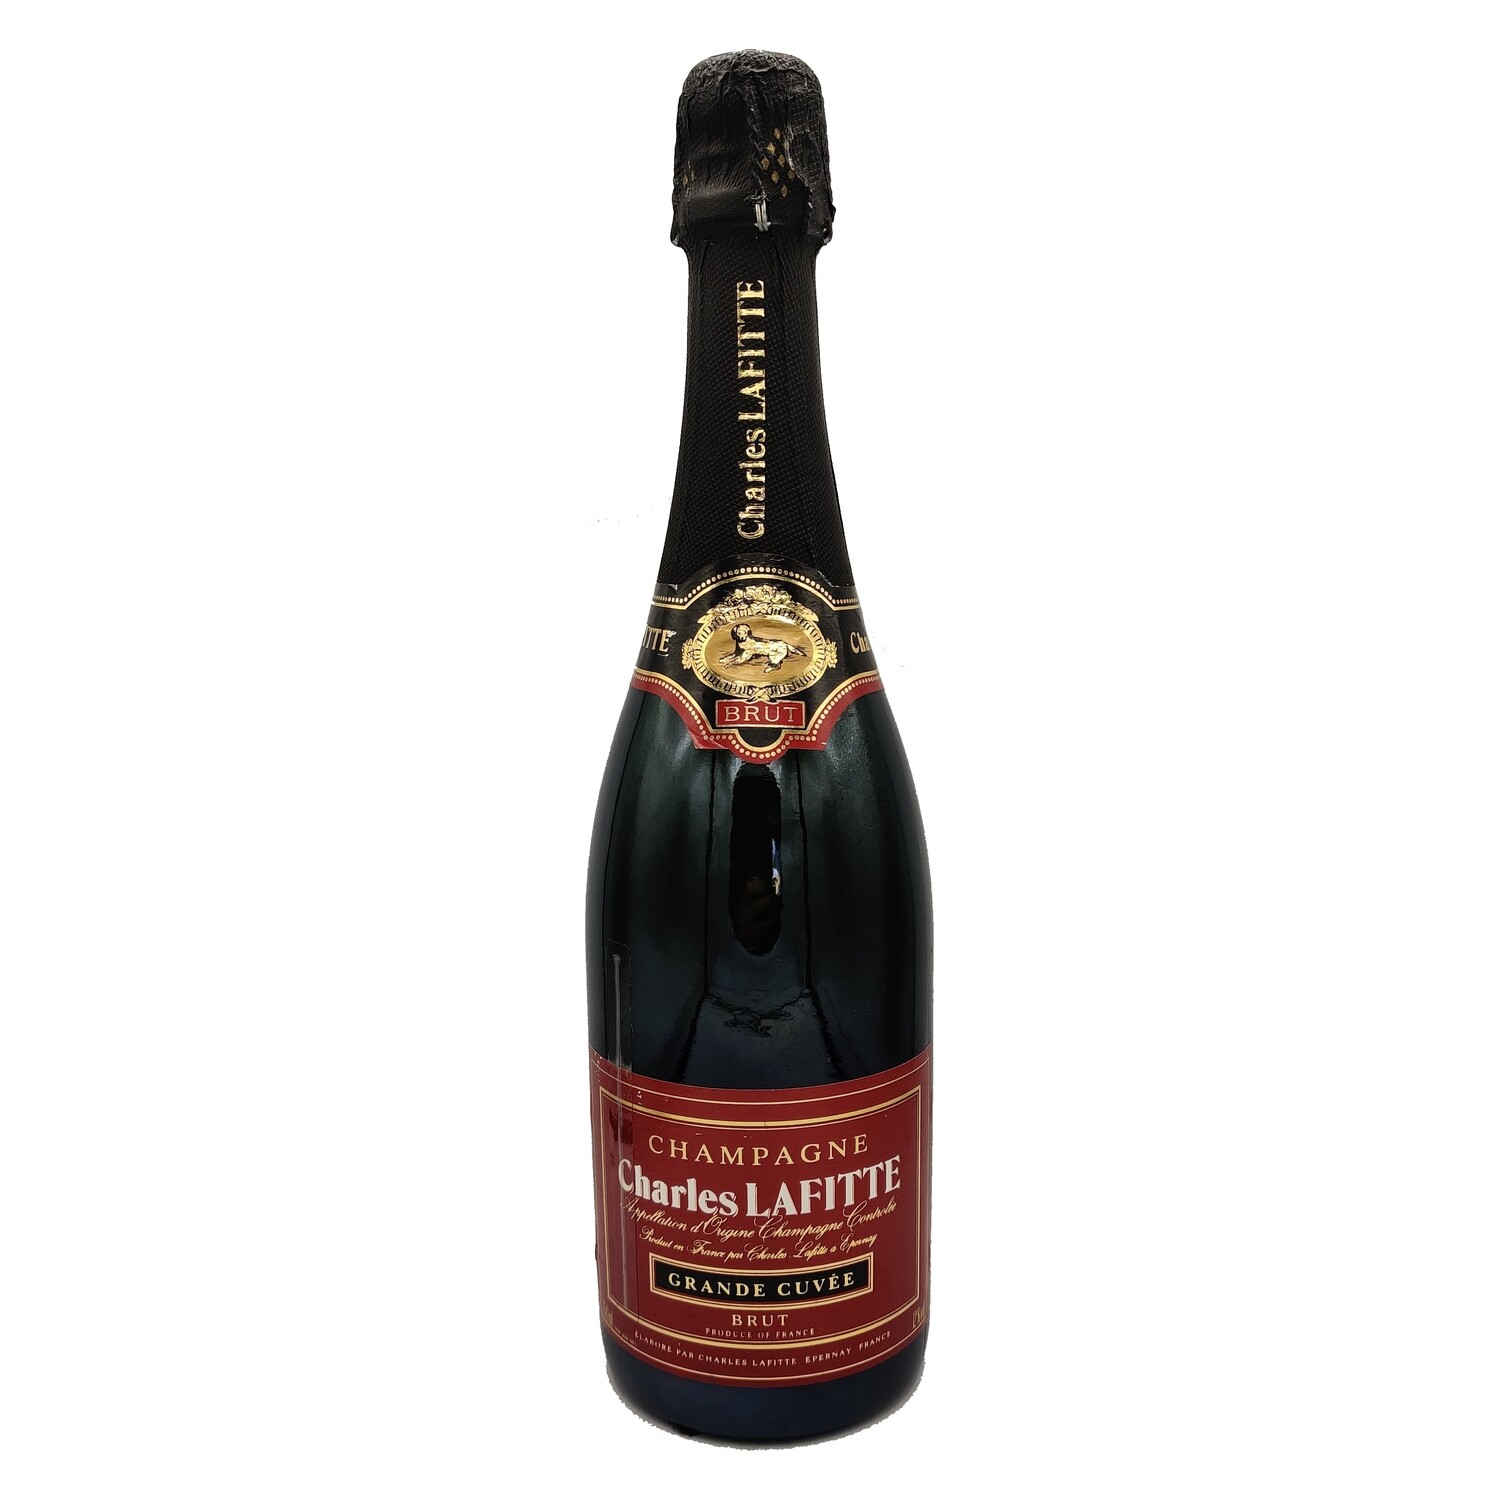 Charles Lafitte Grande Cuvee Brut Champagne